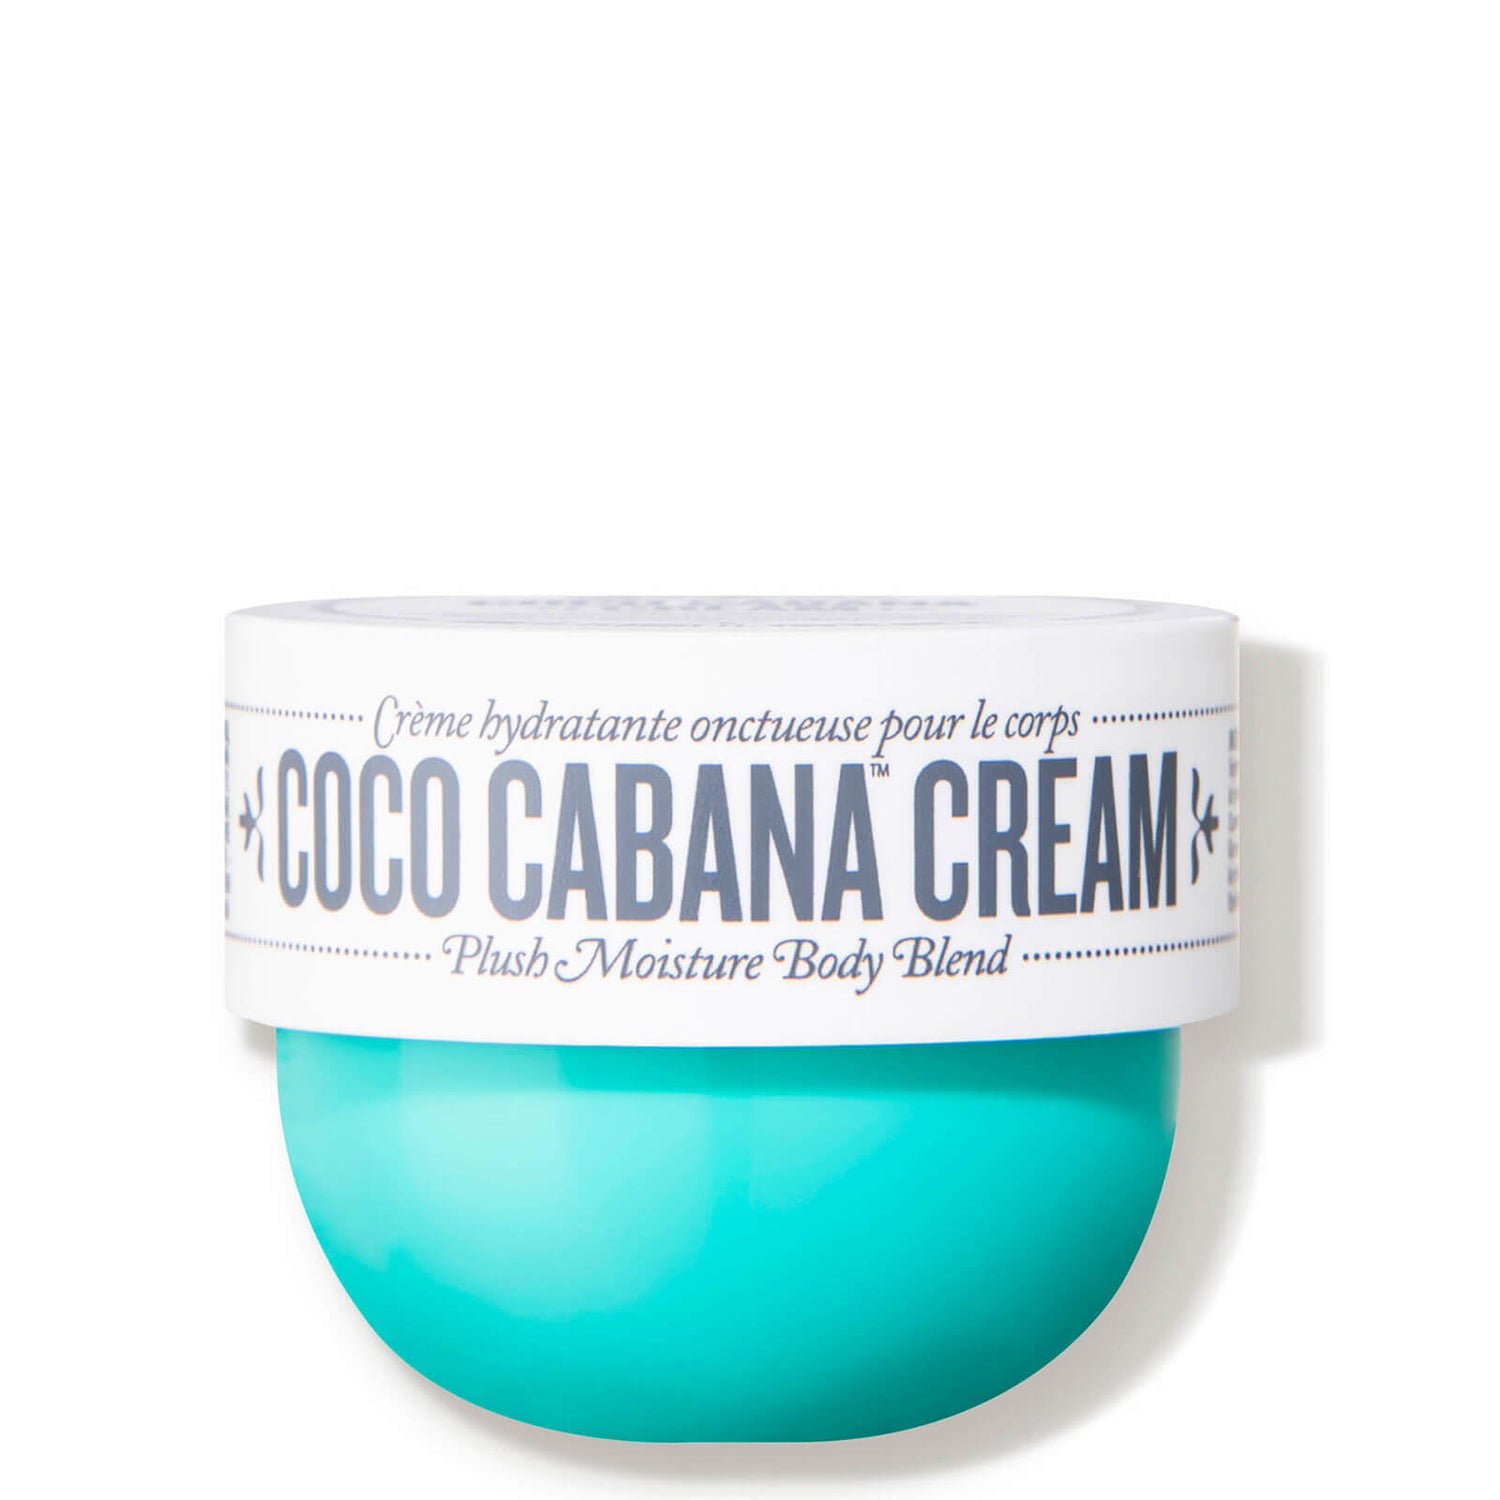 Sol de Janeiro Coco Cabana Body Cream (2.5 fl. oz.)